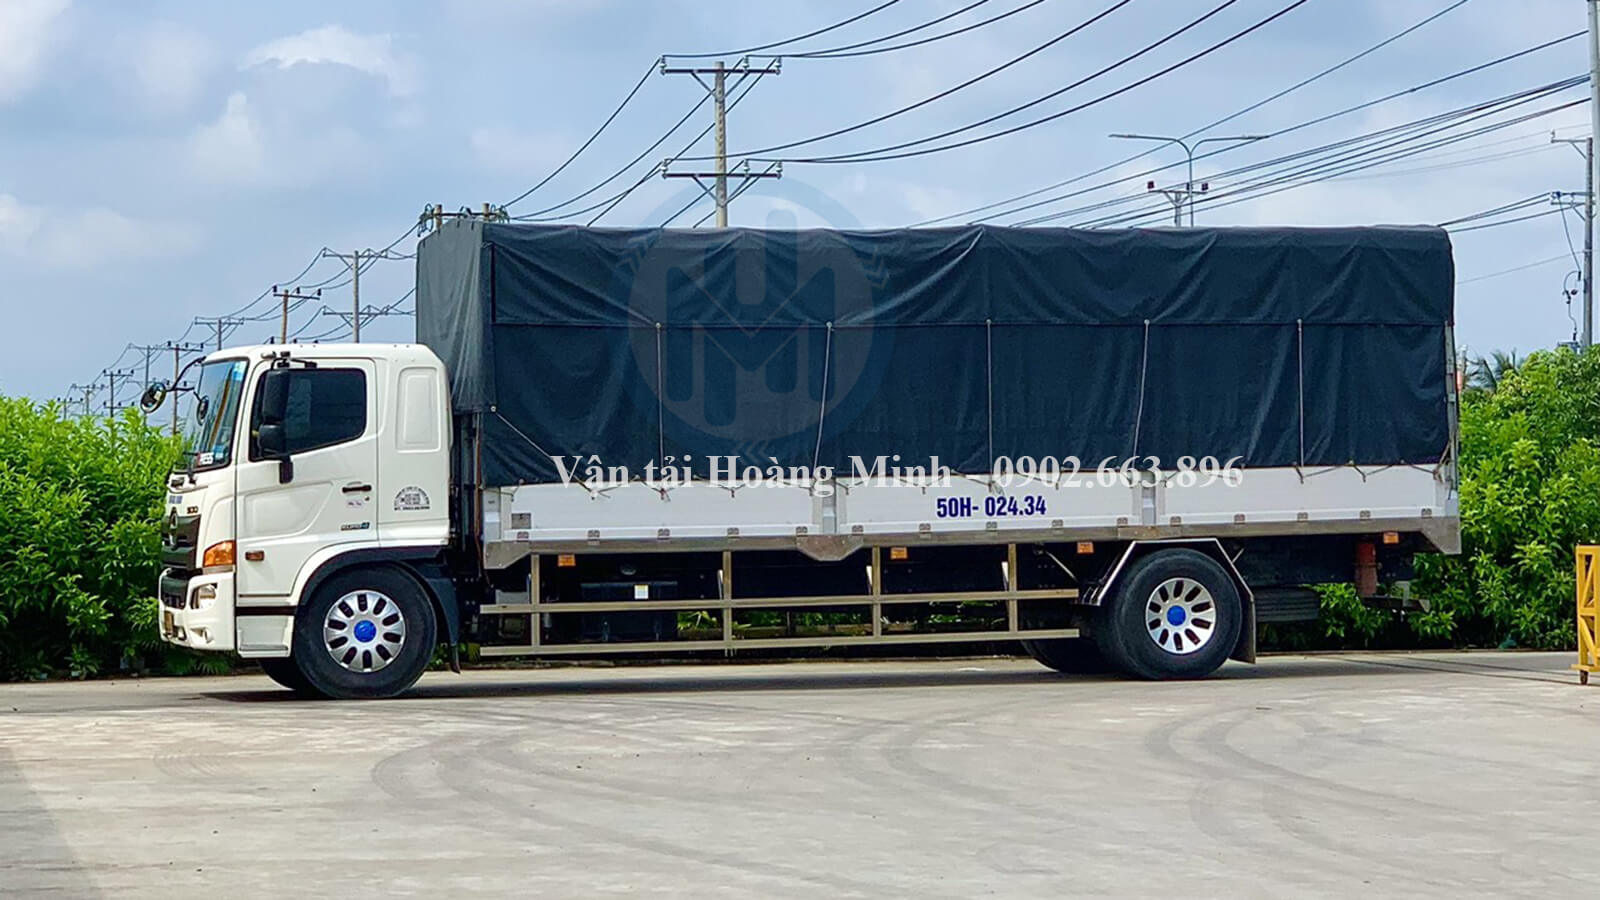 Dịch vụ cho thuê xe tải chở hàng quận Tân Bình uy tín